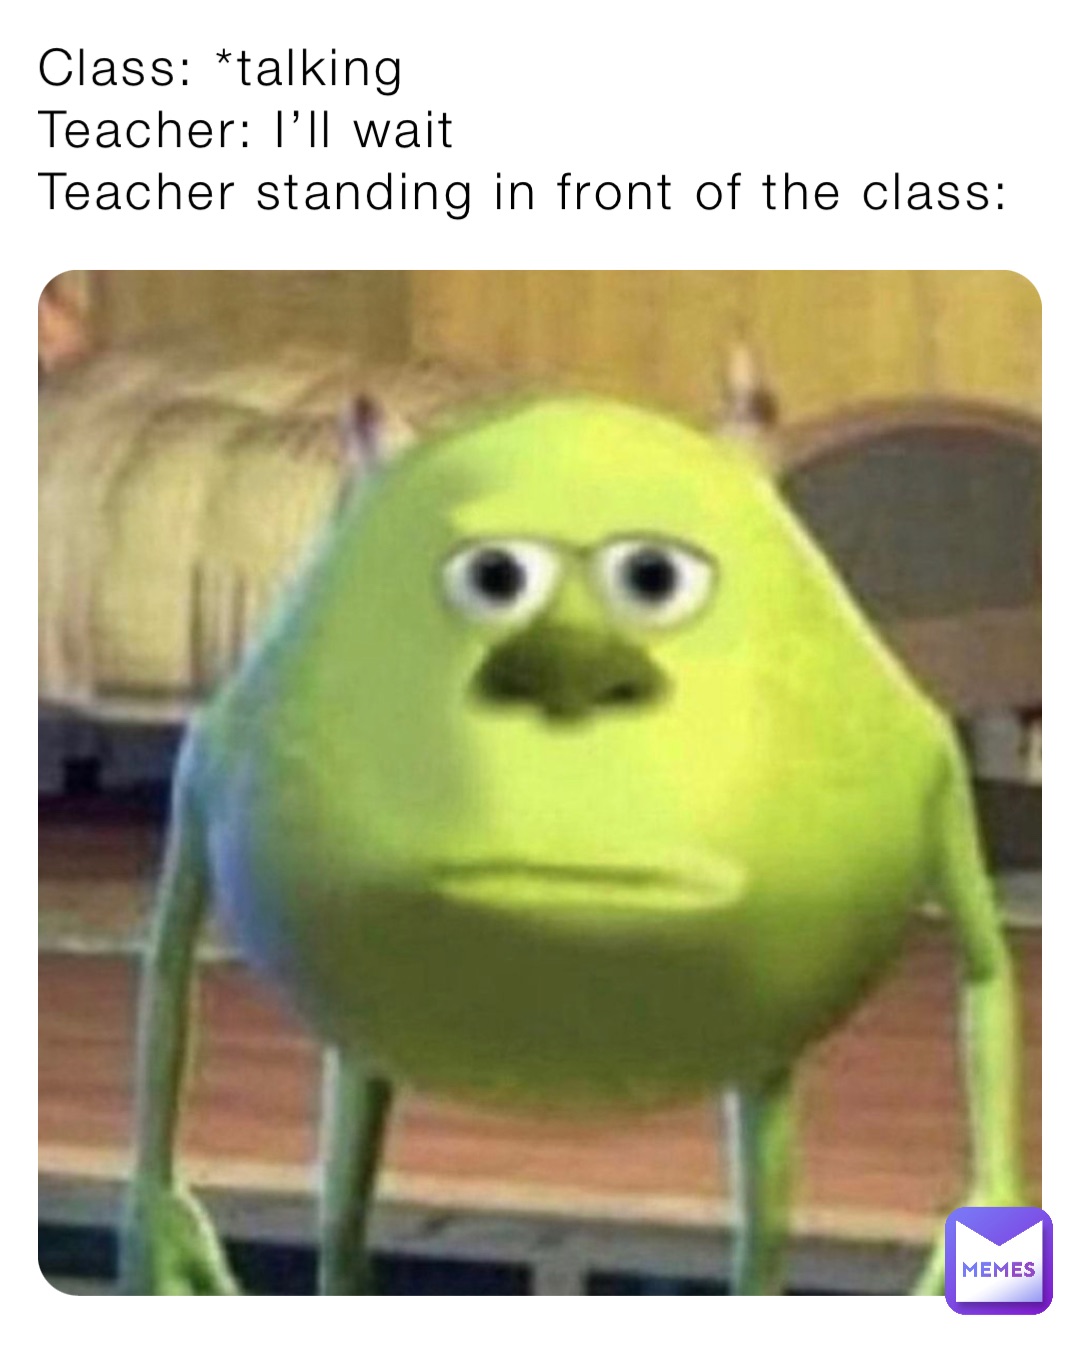 Class: *talking
Teacher: I’ll wait 
Teacher standing in front of the class: